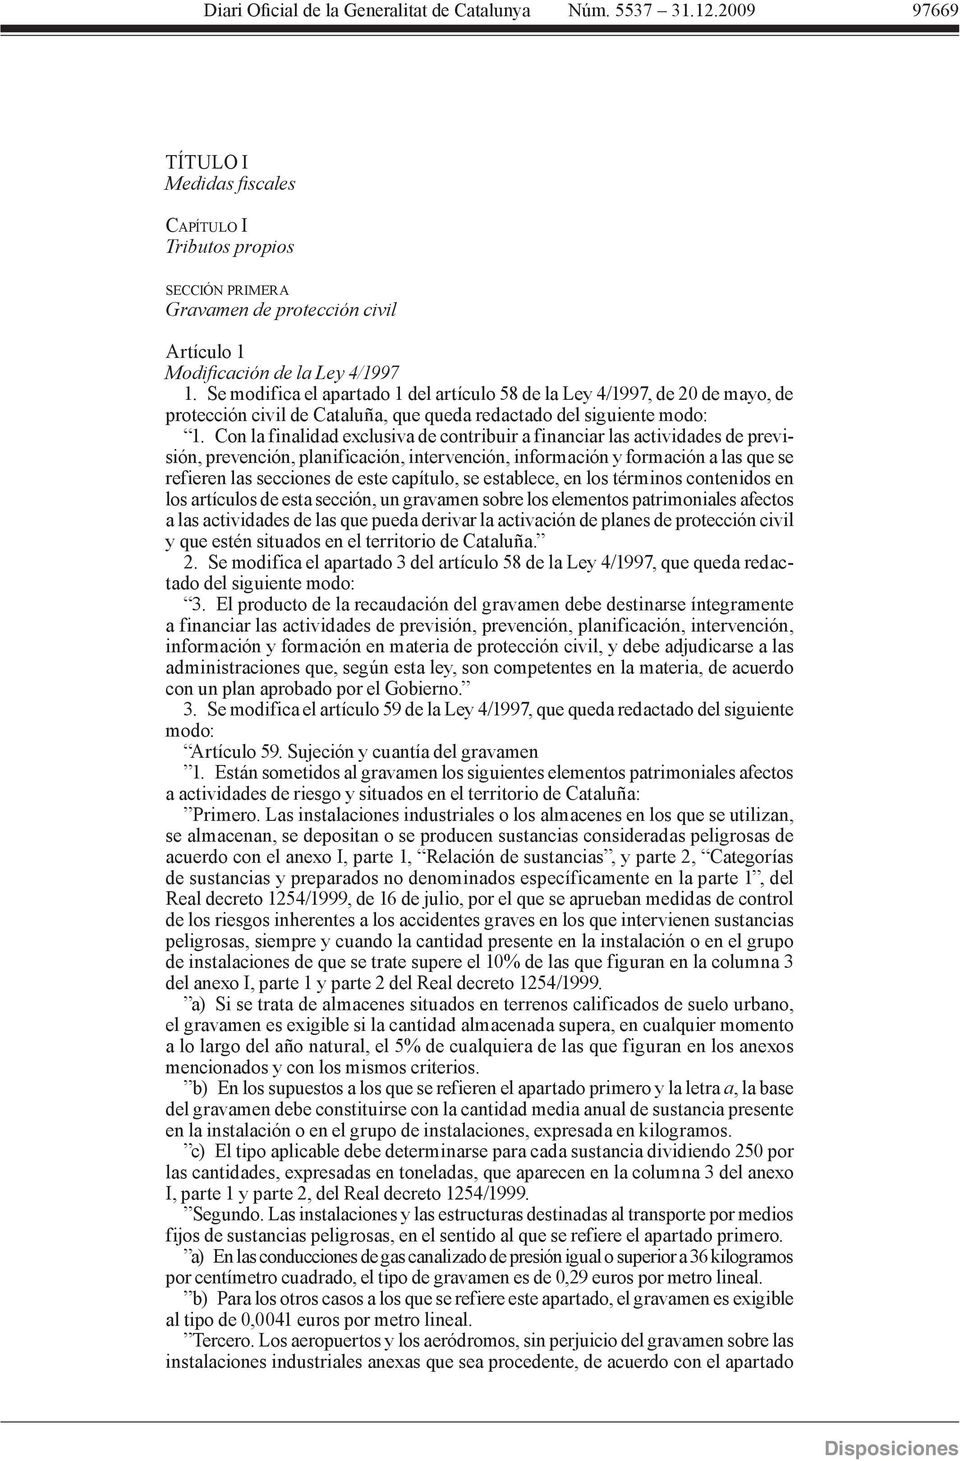 Se modifica el apartado 1 del artículo 58 de la Ley 4/1997, de 20 de mayo, de protección civil de Cataluña, que queda redactado del siguiente modo: 1.